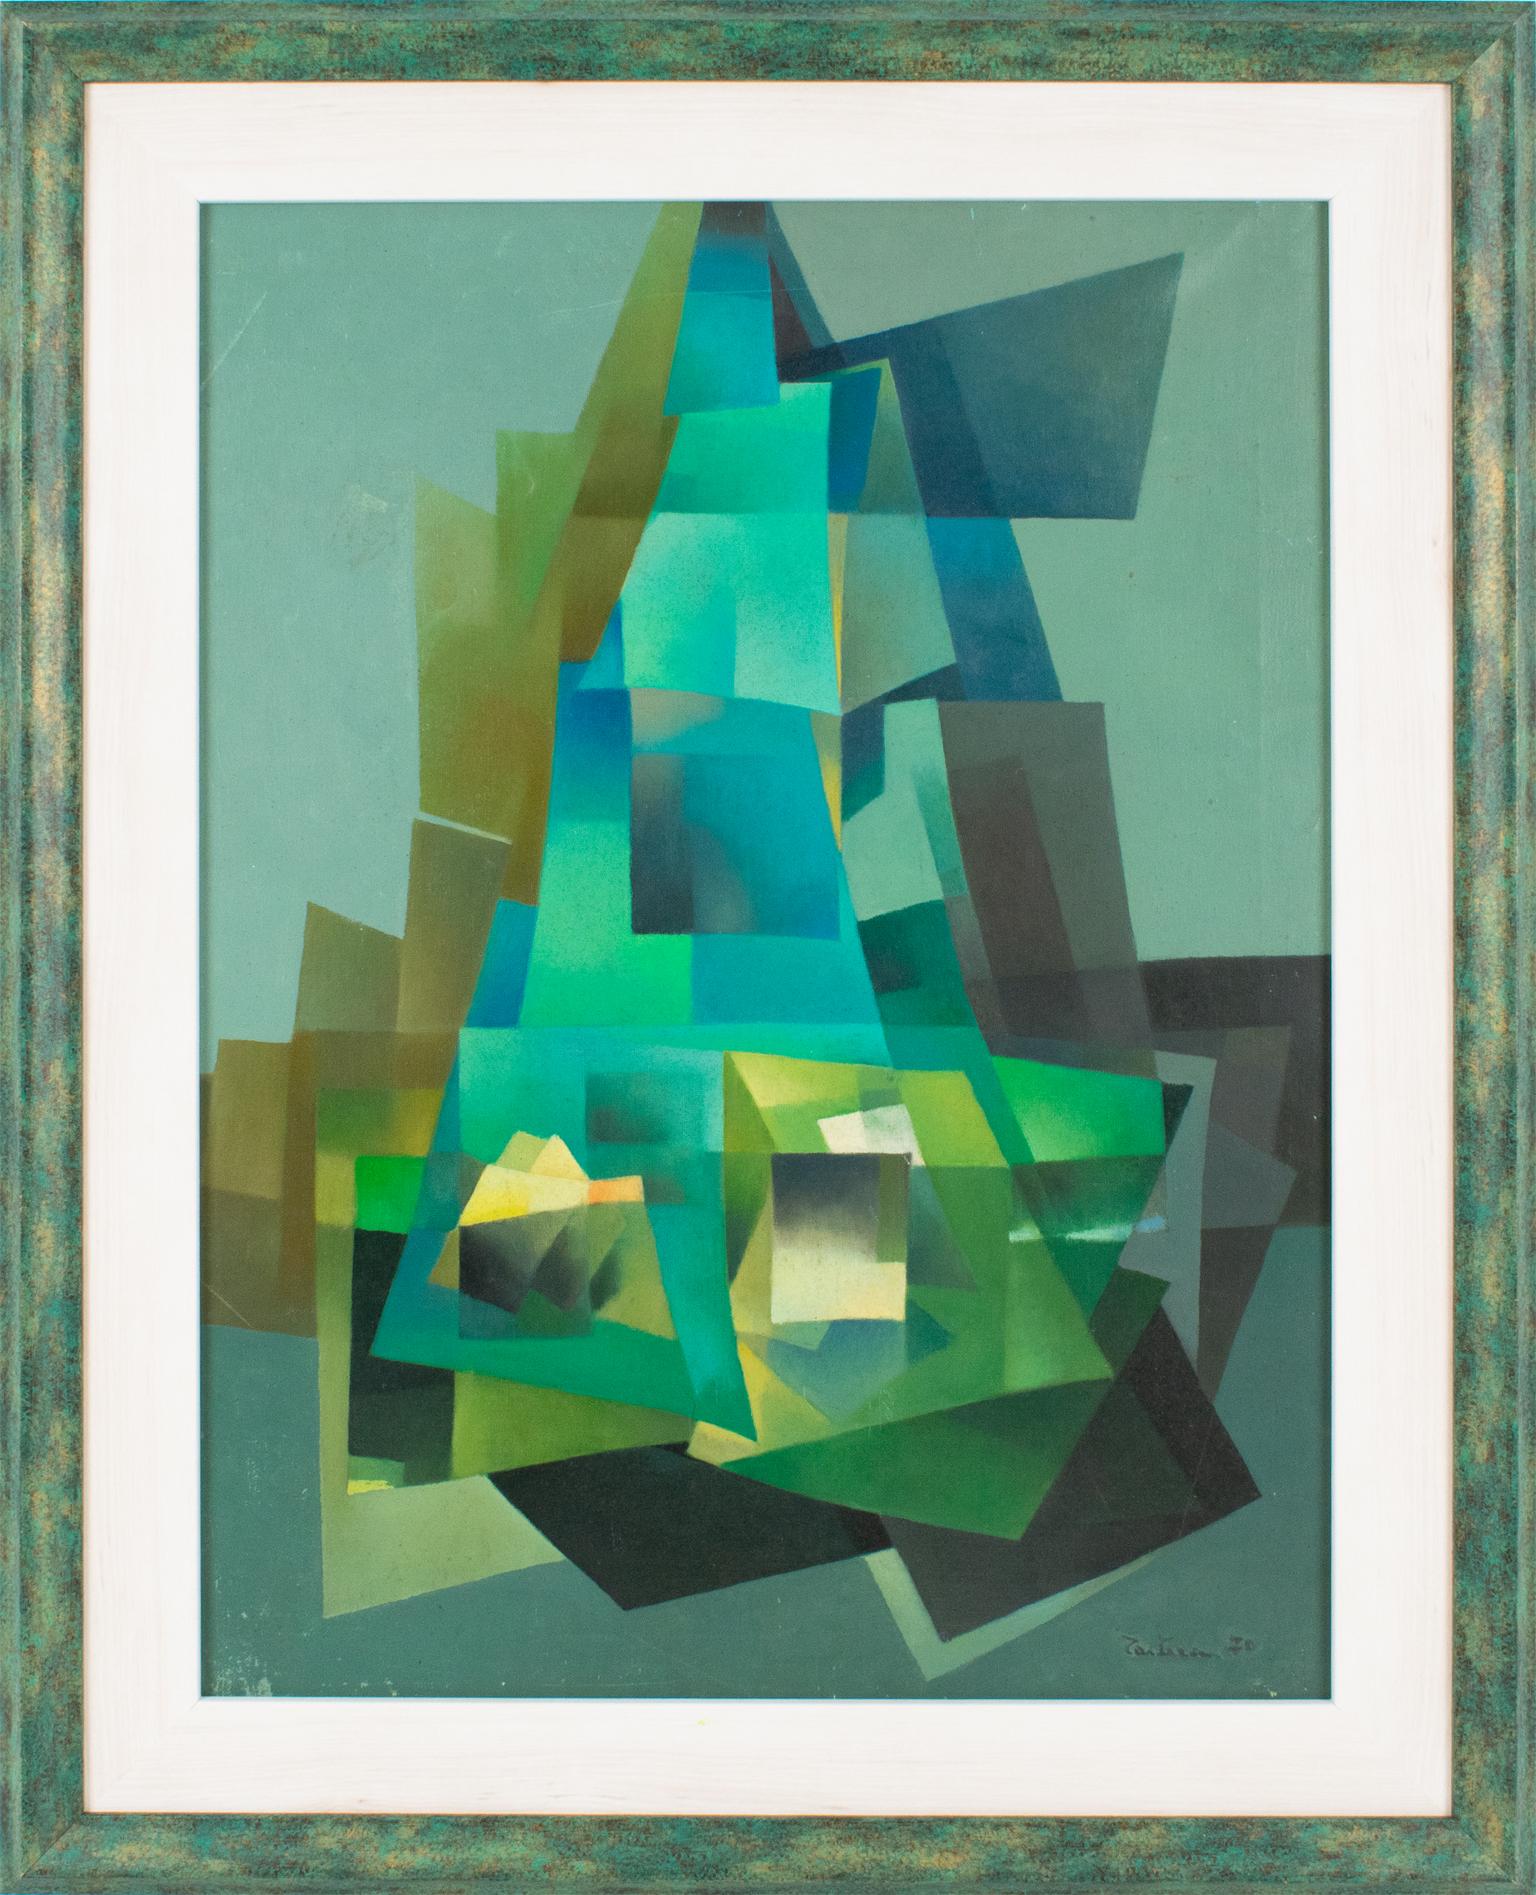 Ivo Tartarini (1912 - 1993) hat dieses stilvolle kubistisch-konstruktivistische Ölgemälde auf Leinwand entworfen.
Die gekonnte Komposition und die sorgfältige Konstruktion verwenden kontrastierende Farben mit türkisen und grünen Nuancen. Ivo